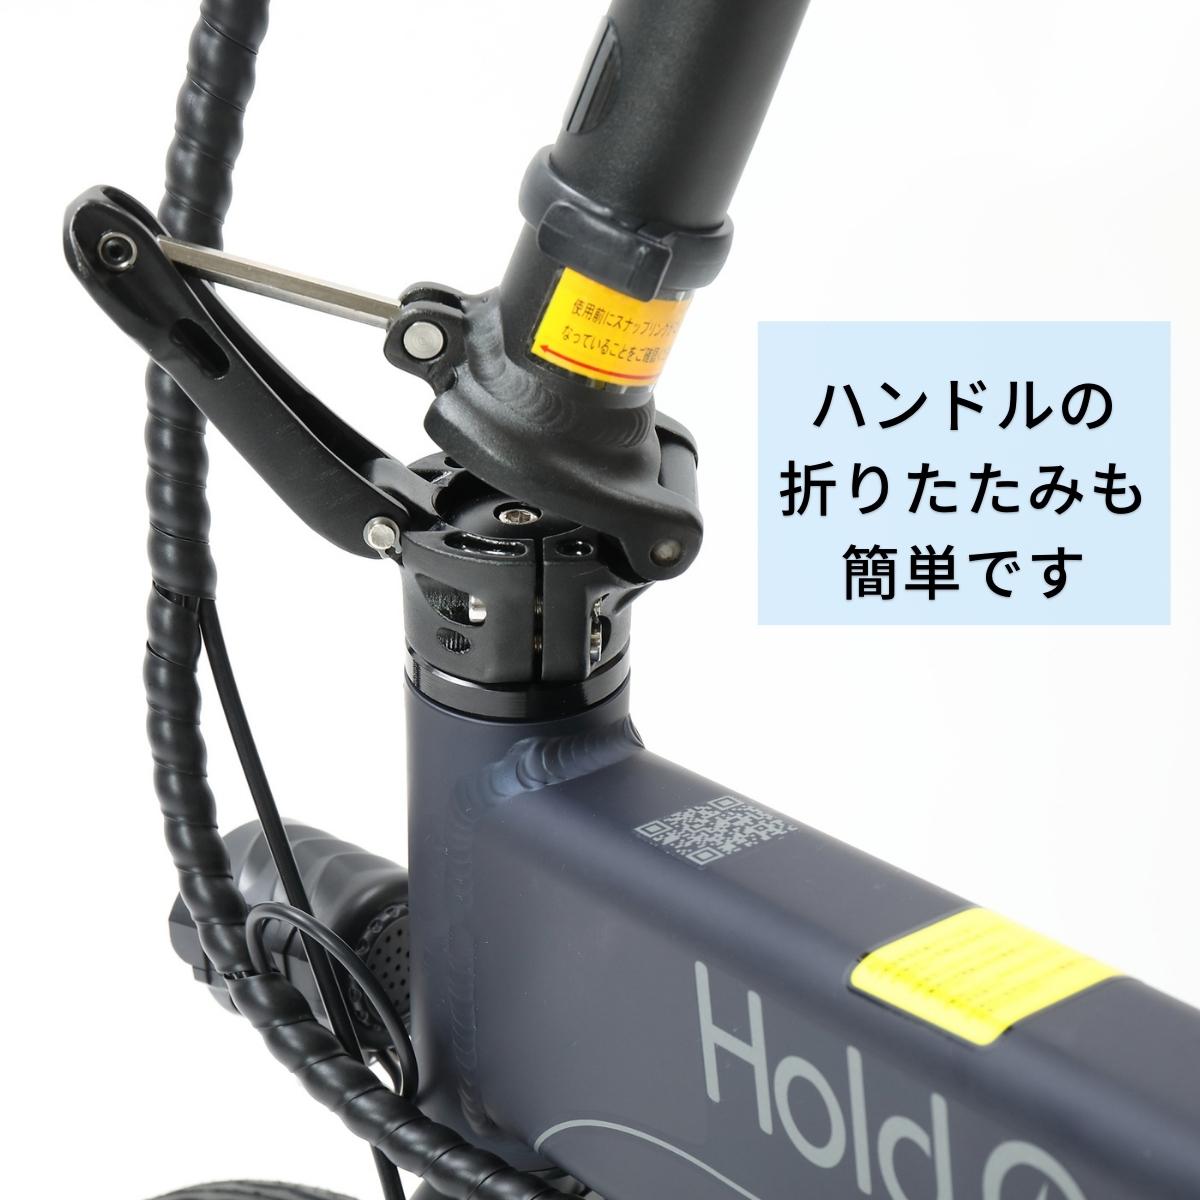 電動アシスト自転車 HoldOn Q1J（折りたたみ 全6色）